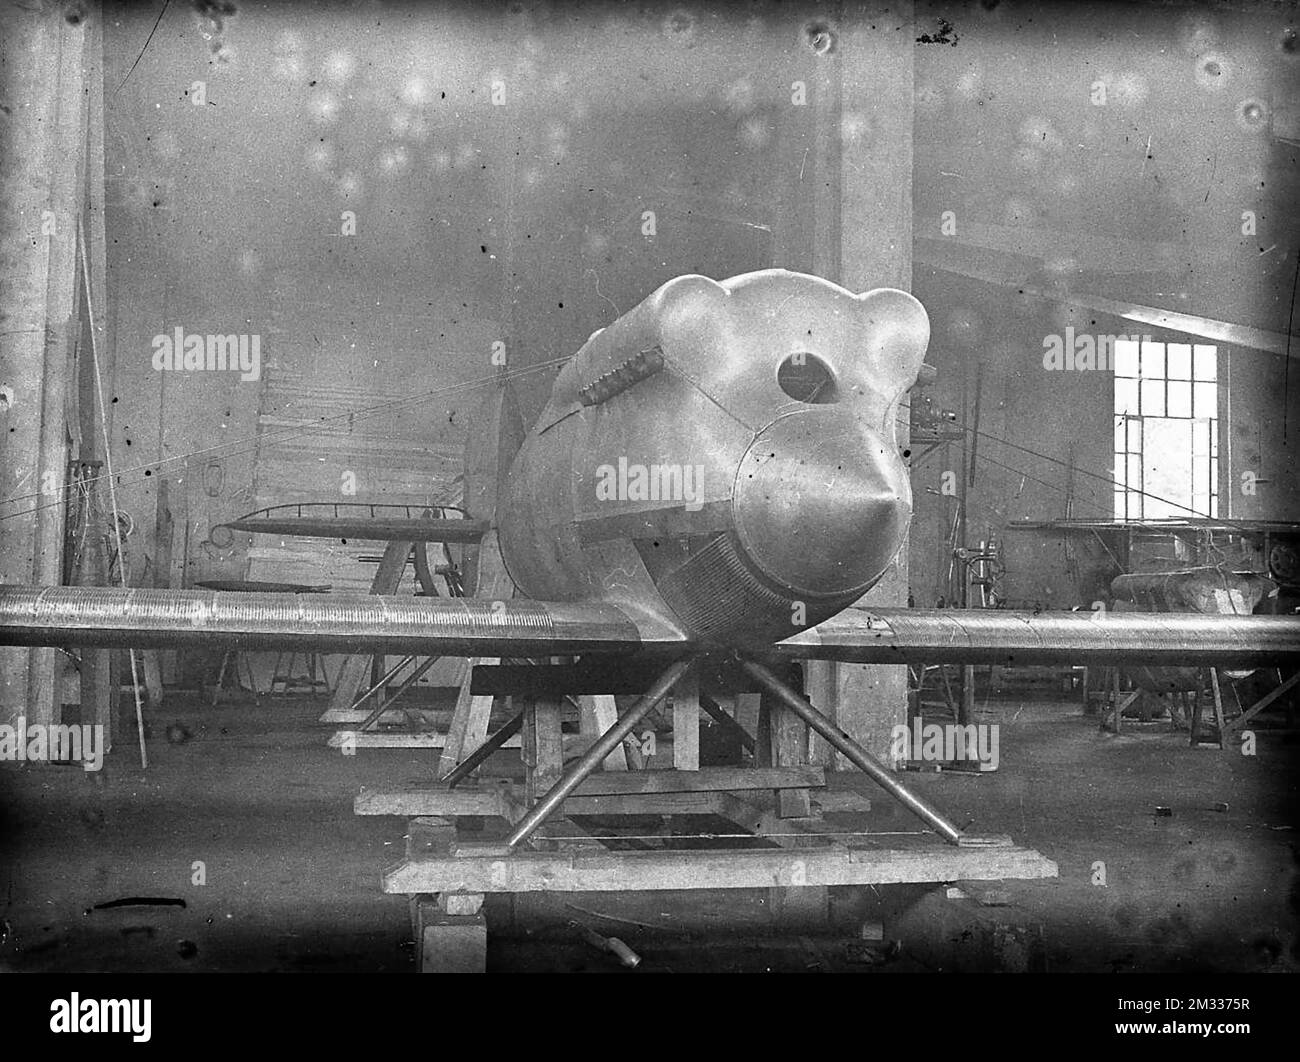 Aeroplani - Macchi M52R del Reparto alta Velocità 1928 (1) Foto Stock